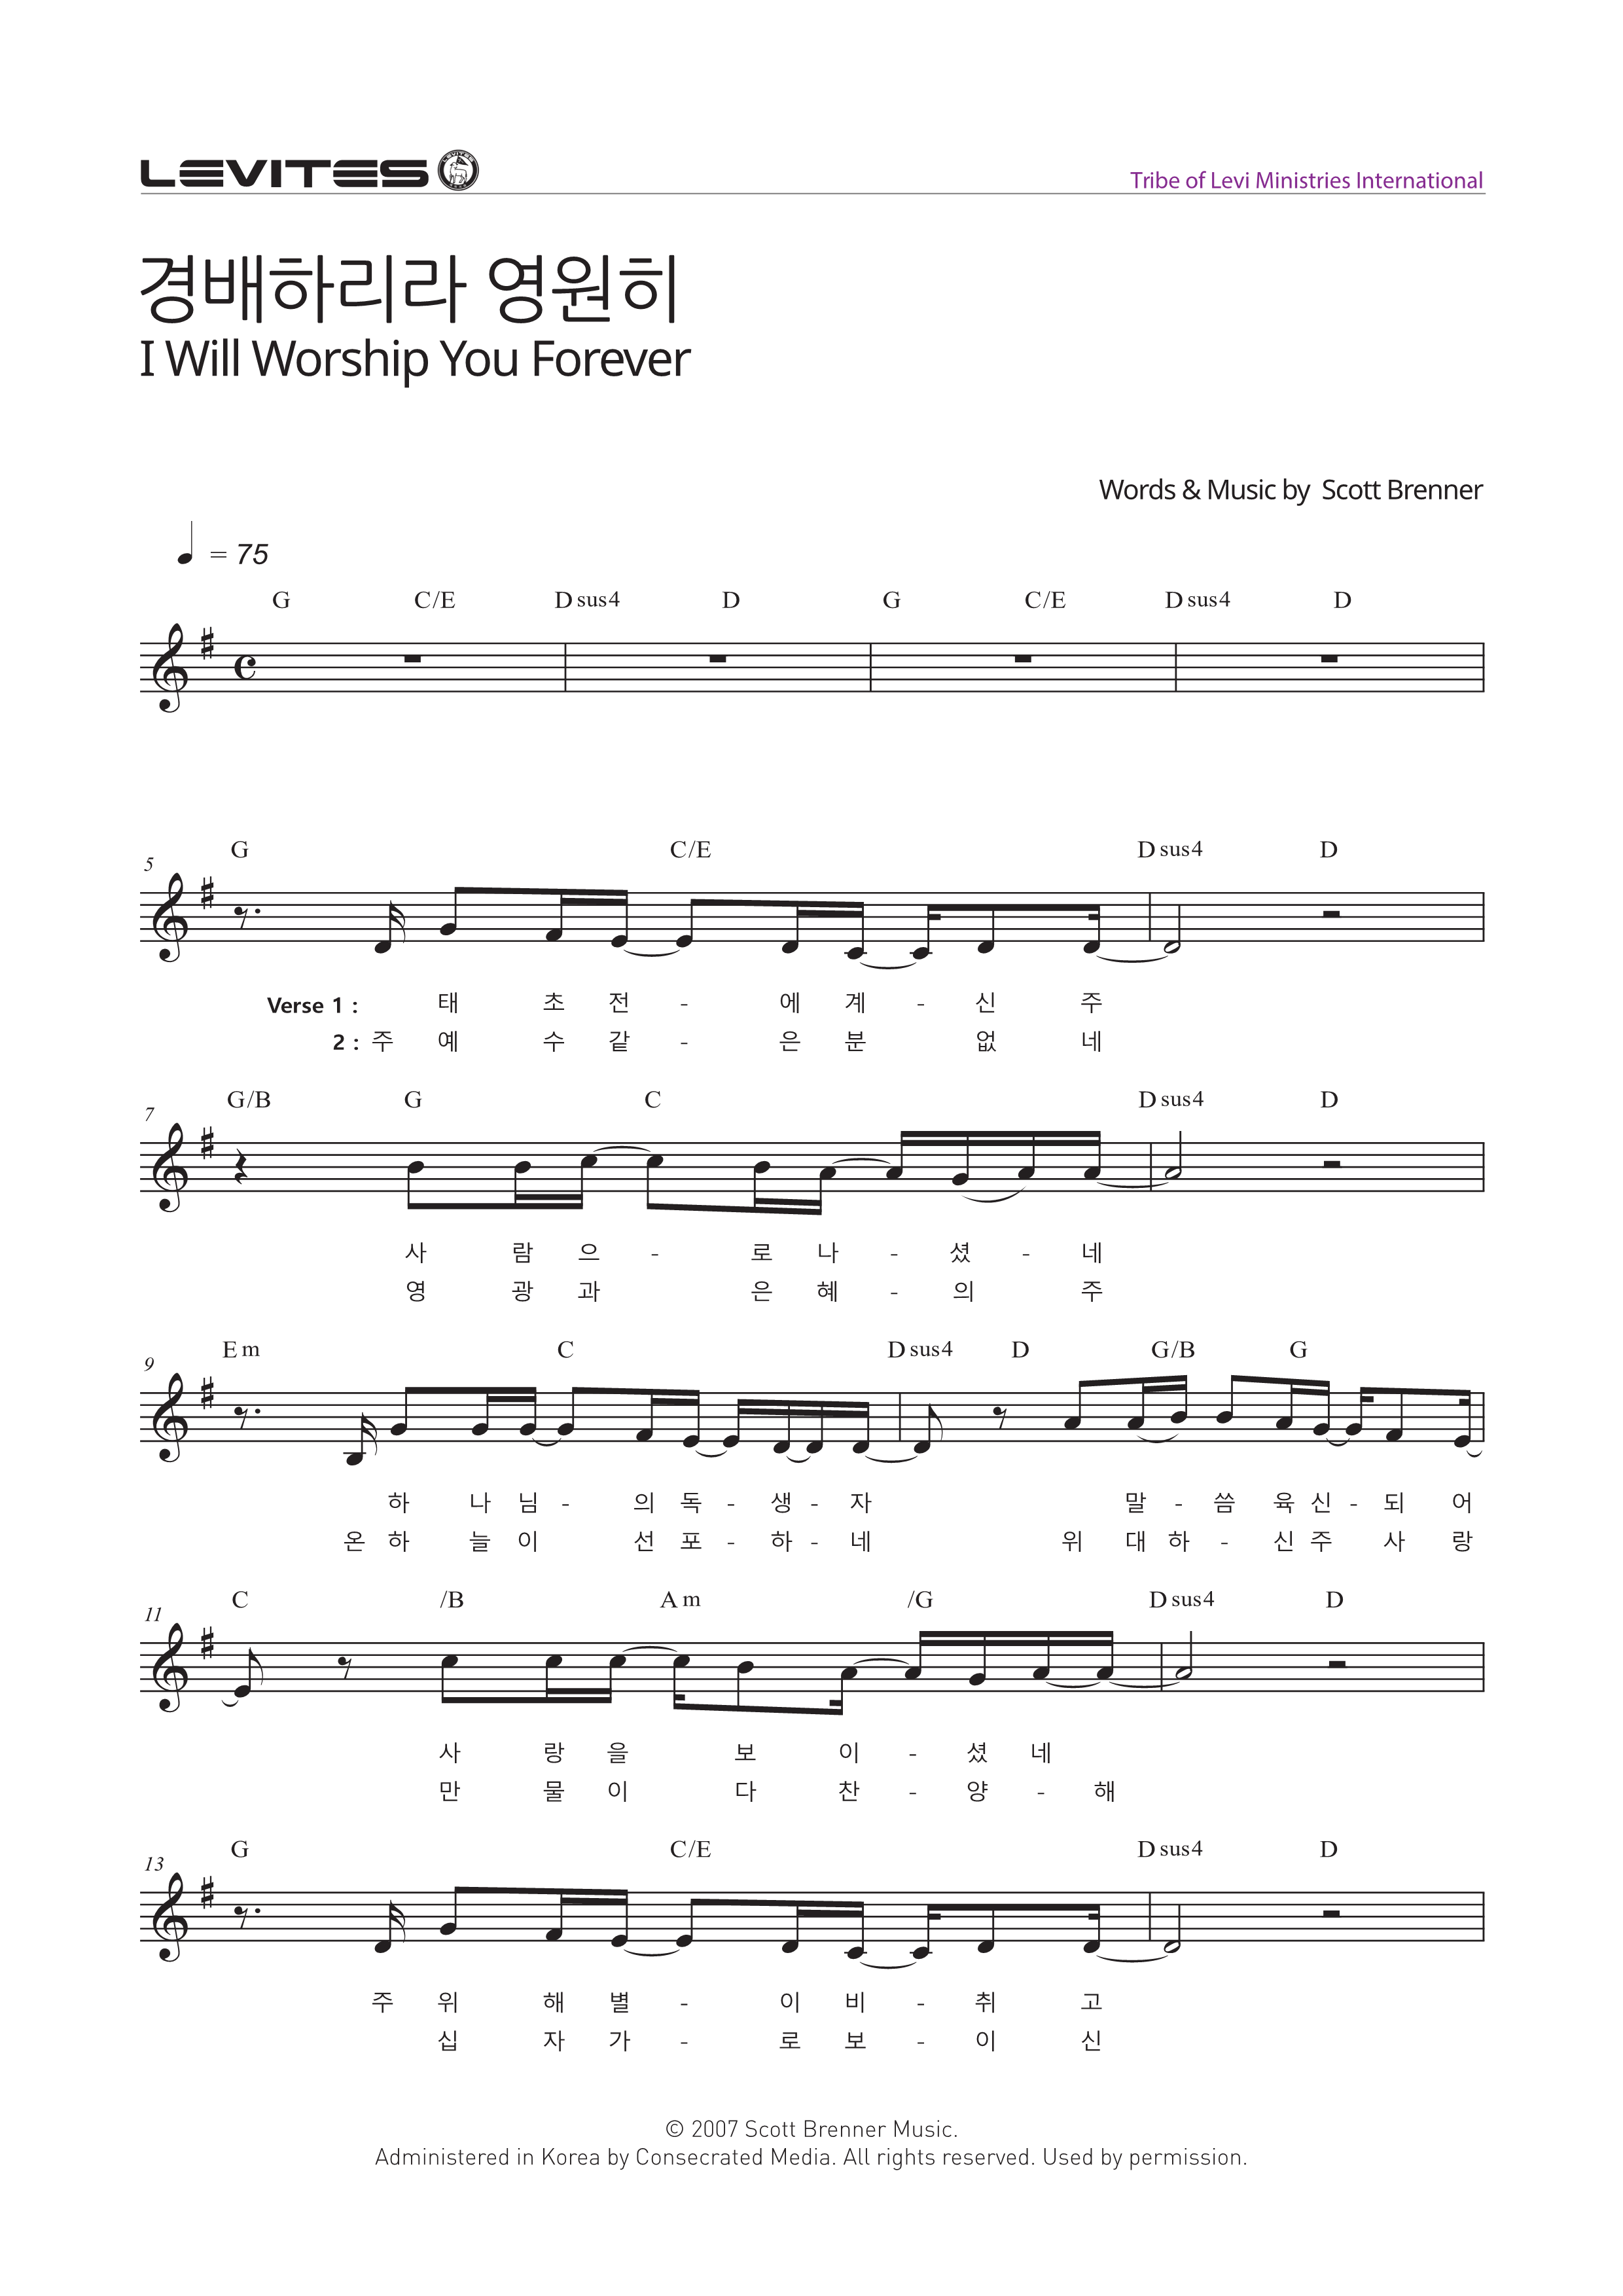 경배하리라 영원히(I Will Worship You Forever)(태초 전에 계신 주)-스캇브래너&#44; 레위지파(G코드/가사/영상/악보)